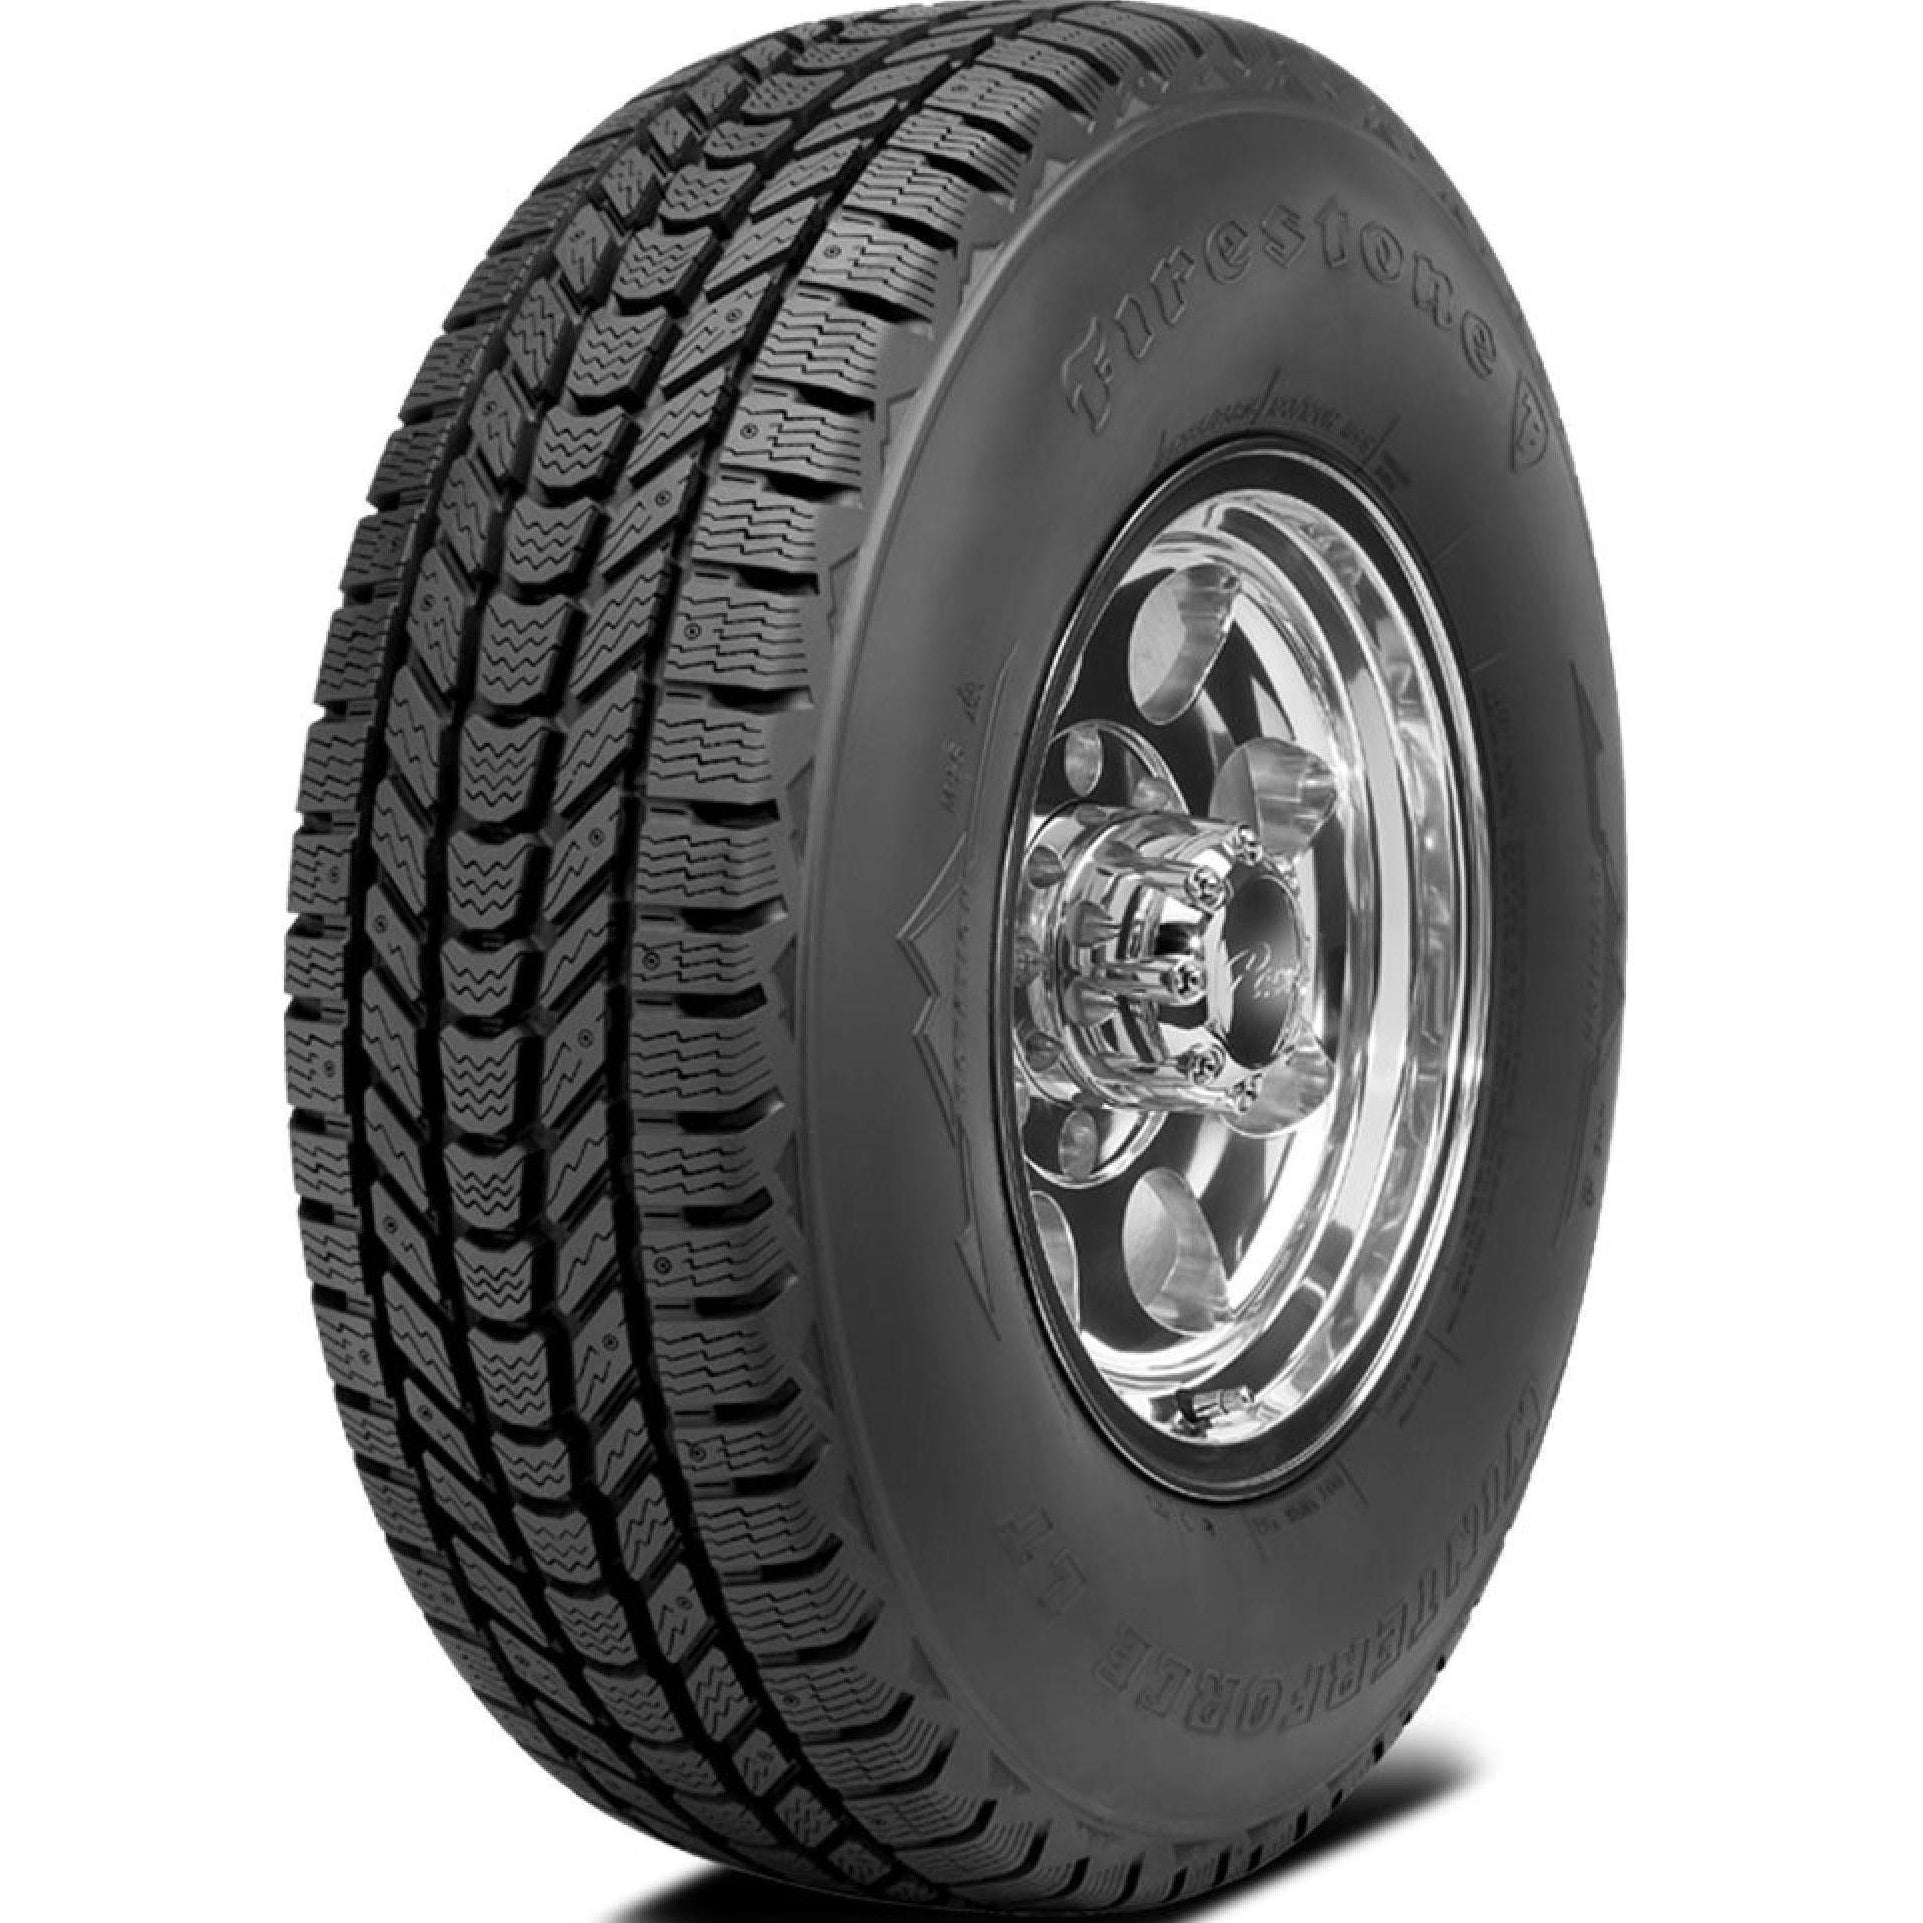 FIRESTONE WINTERFORCE LT LT255/75R17 (32.1X10R 17) Tires